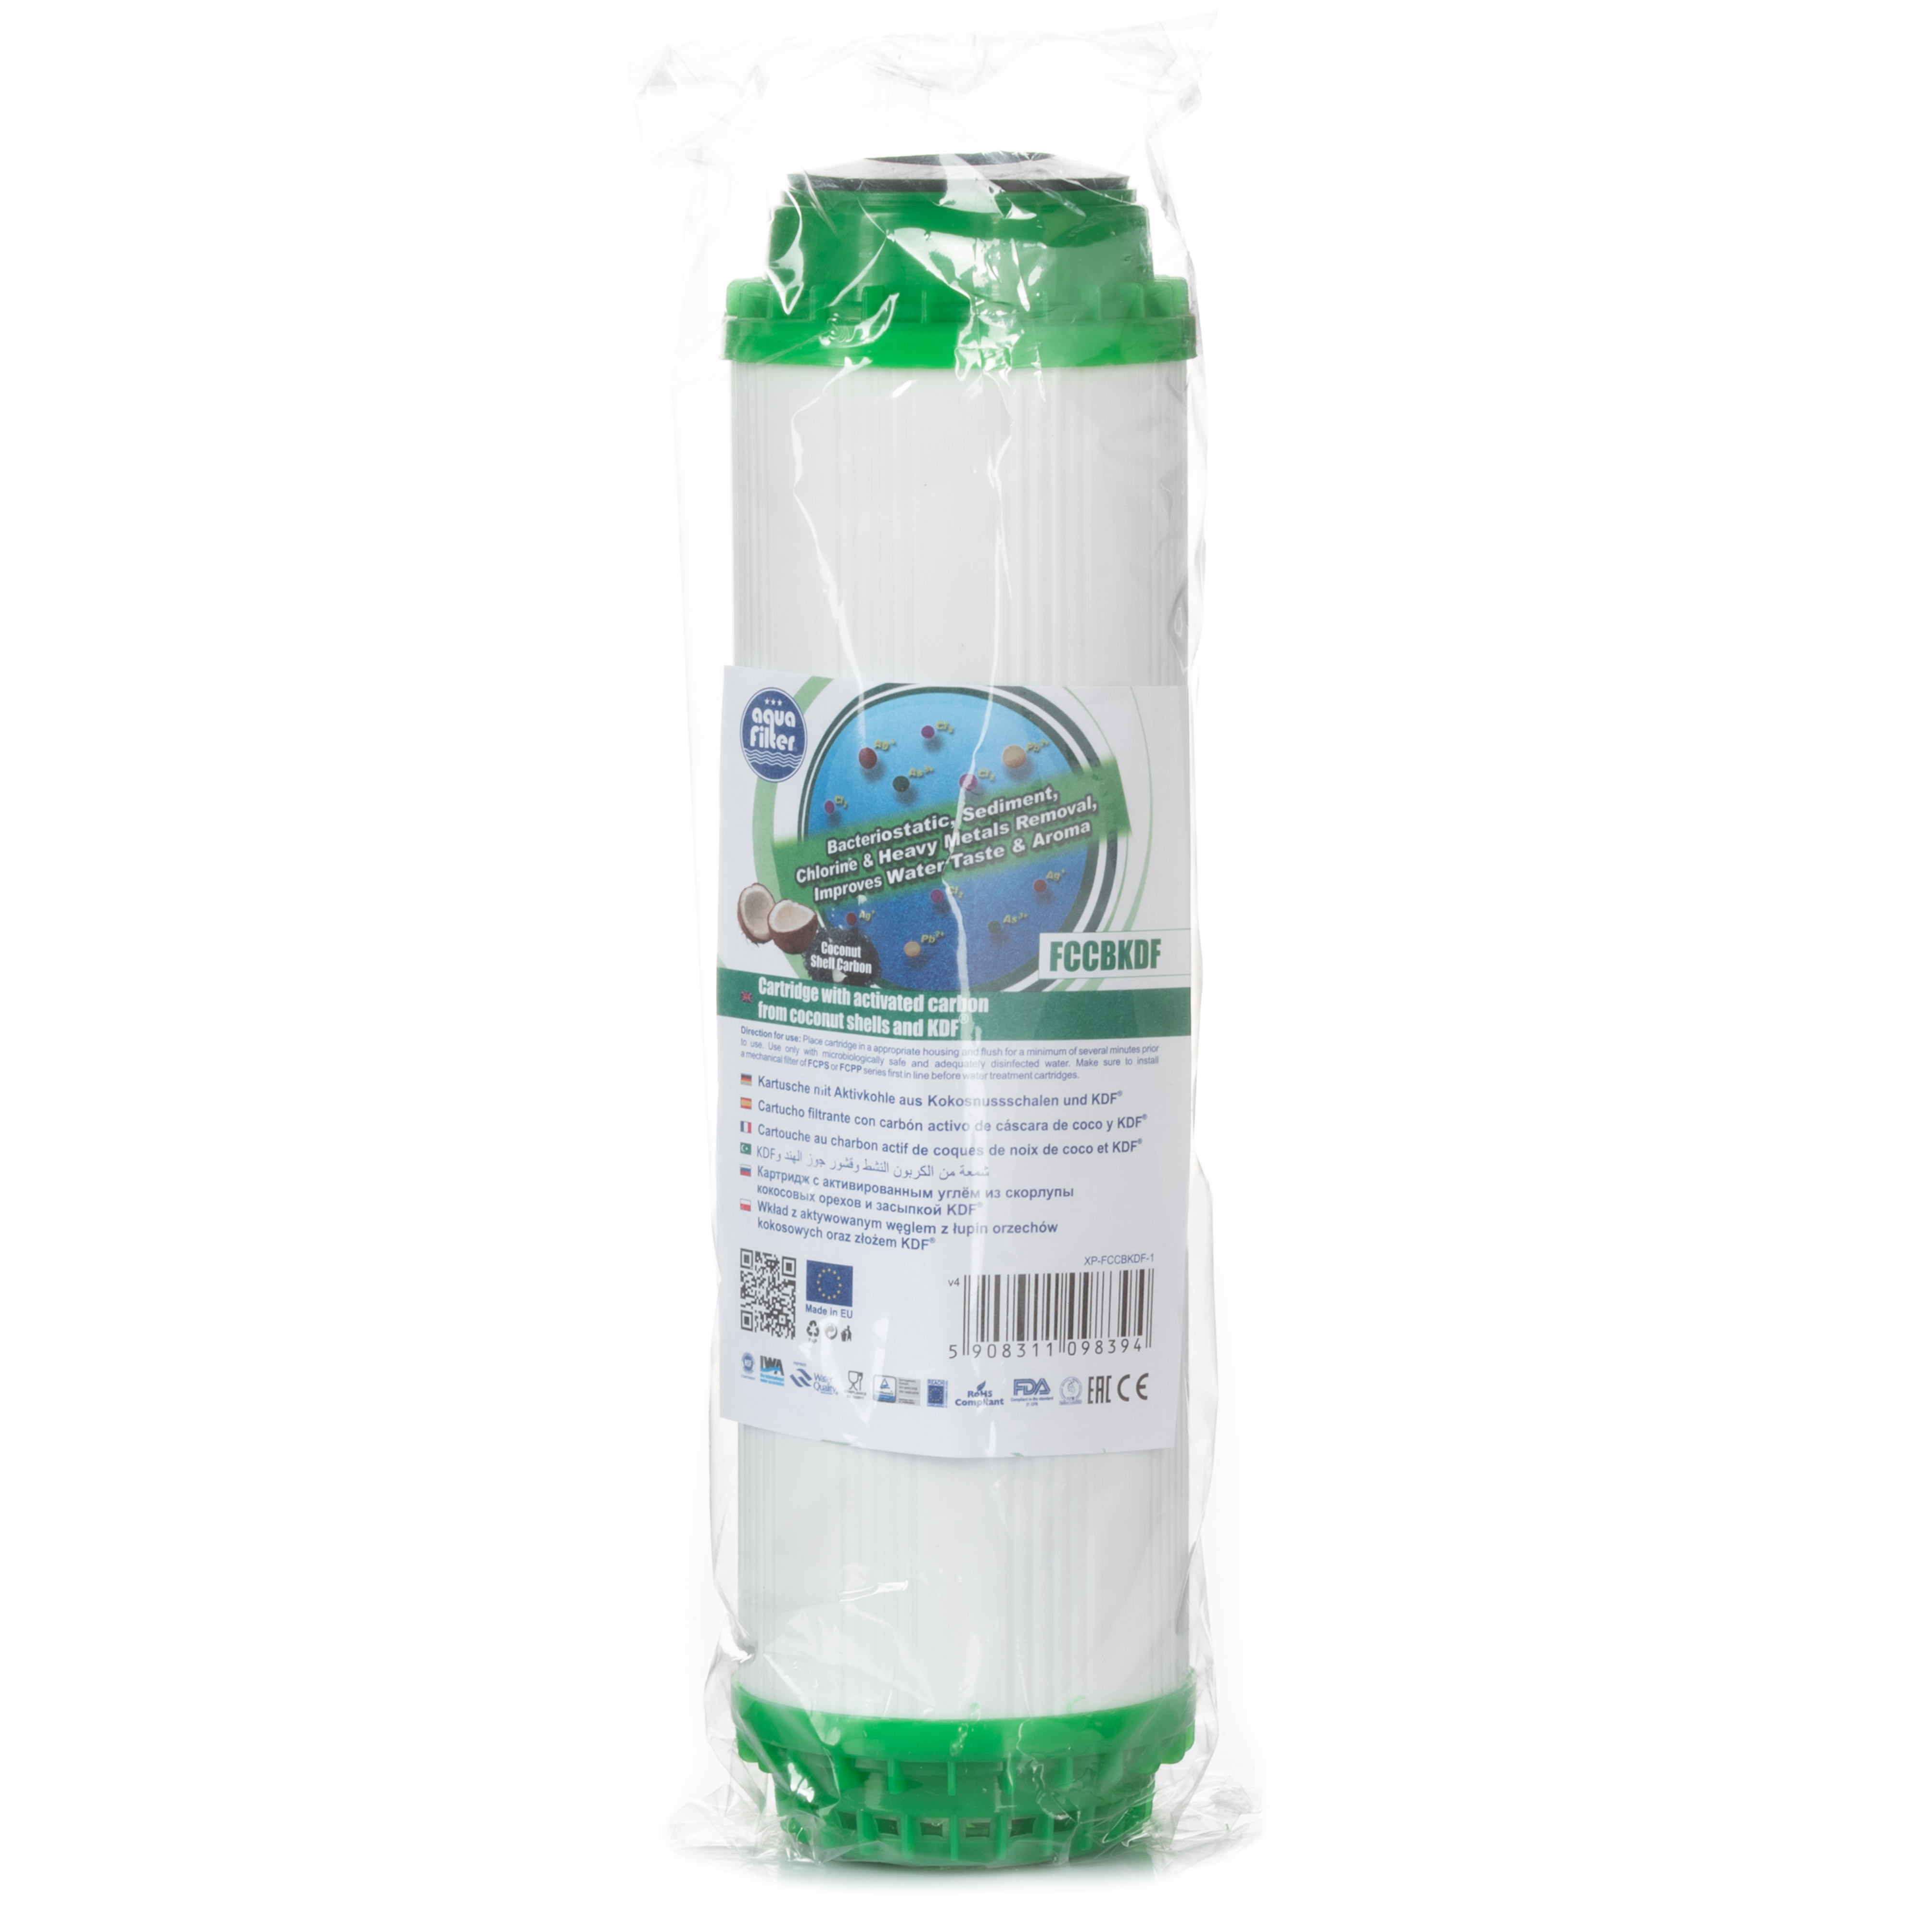 Картридж Aquafilter для холодной воды Aquafilter FCCBKDF 10"x 2 1/2" (Уголь) 